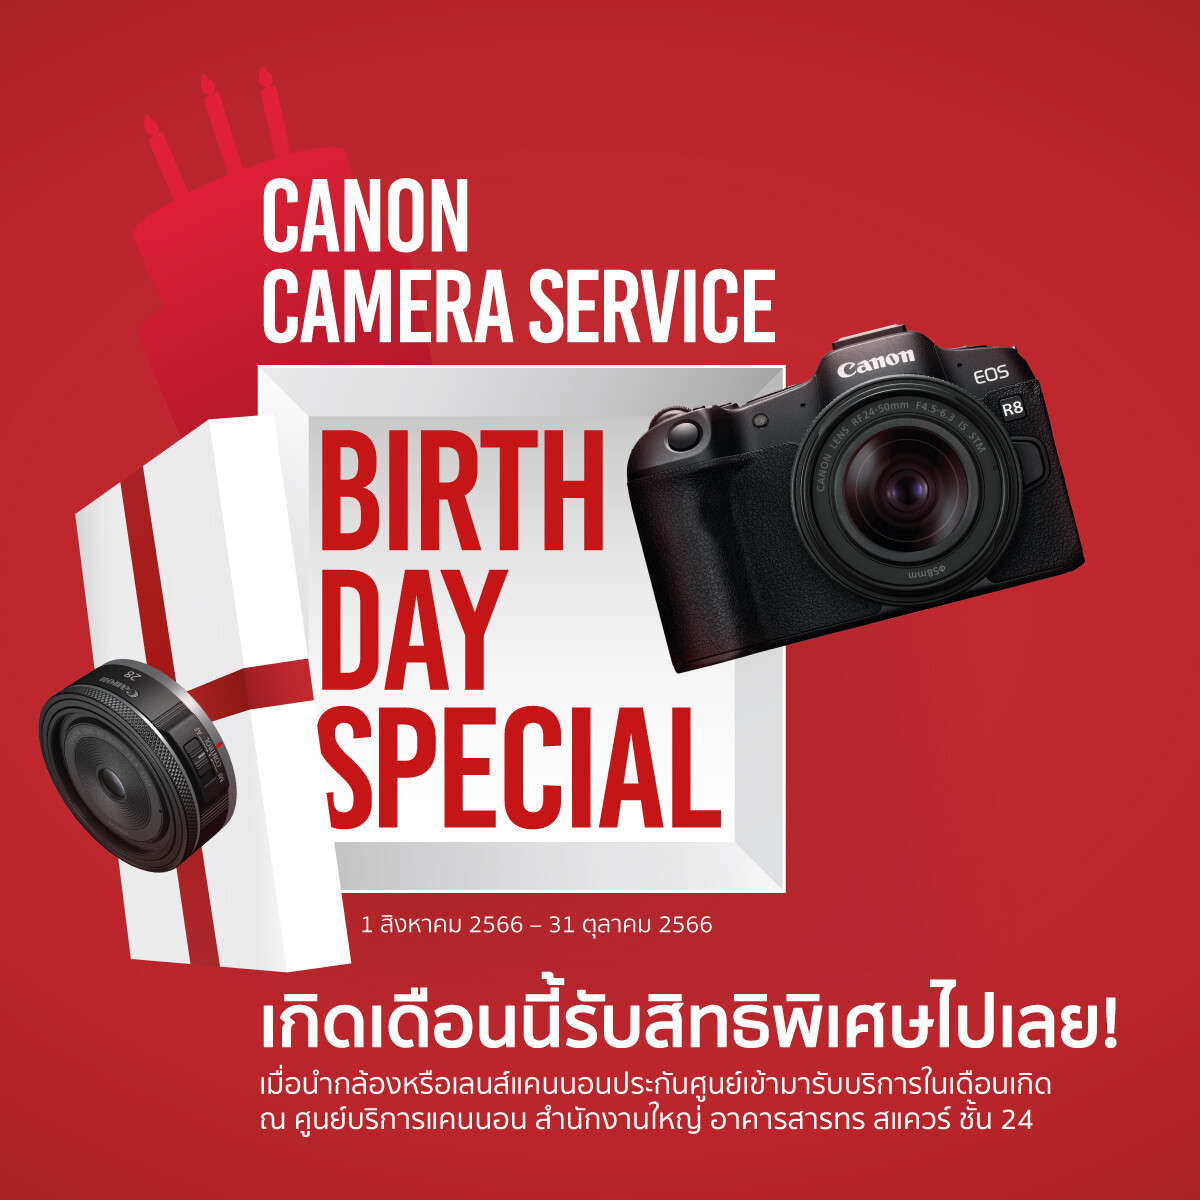 ของขวัญสุดพิเศษโดนใจช่างภาพ! แคนนอน จัดแคมเปญดีต่อใจ "Canon Camera Service Birthday Special" มอบส่วนลดค่าบริการและซ่อมด่วนฟรีในเดือนเกิดของลูกค้า